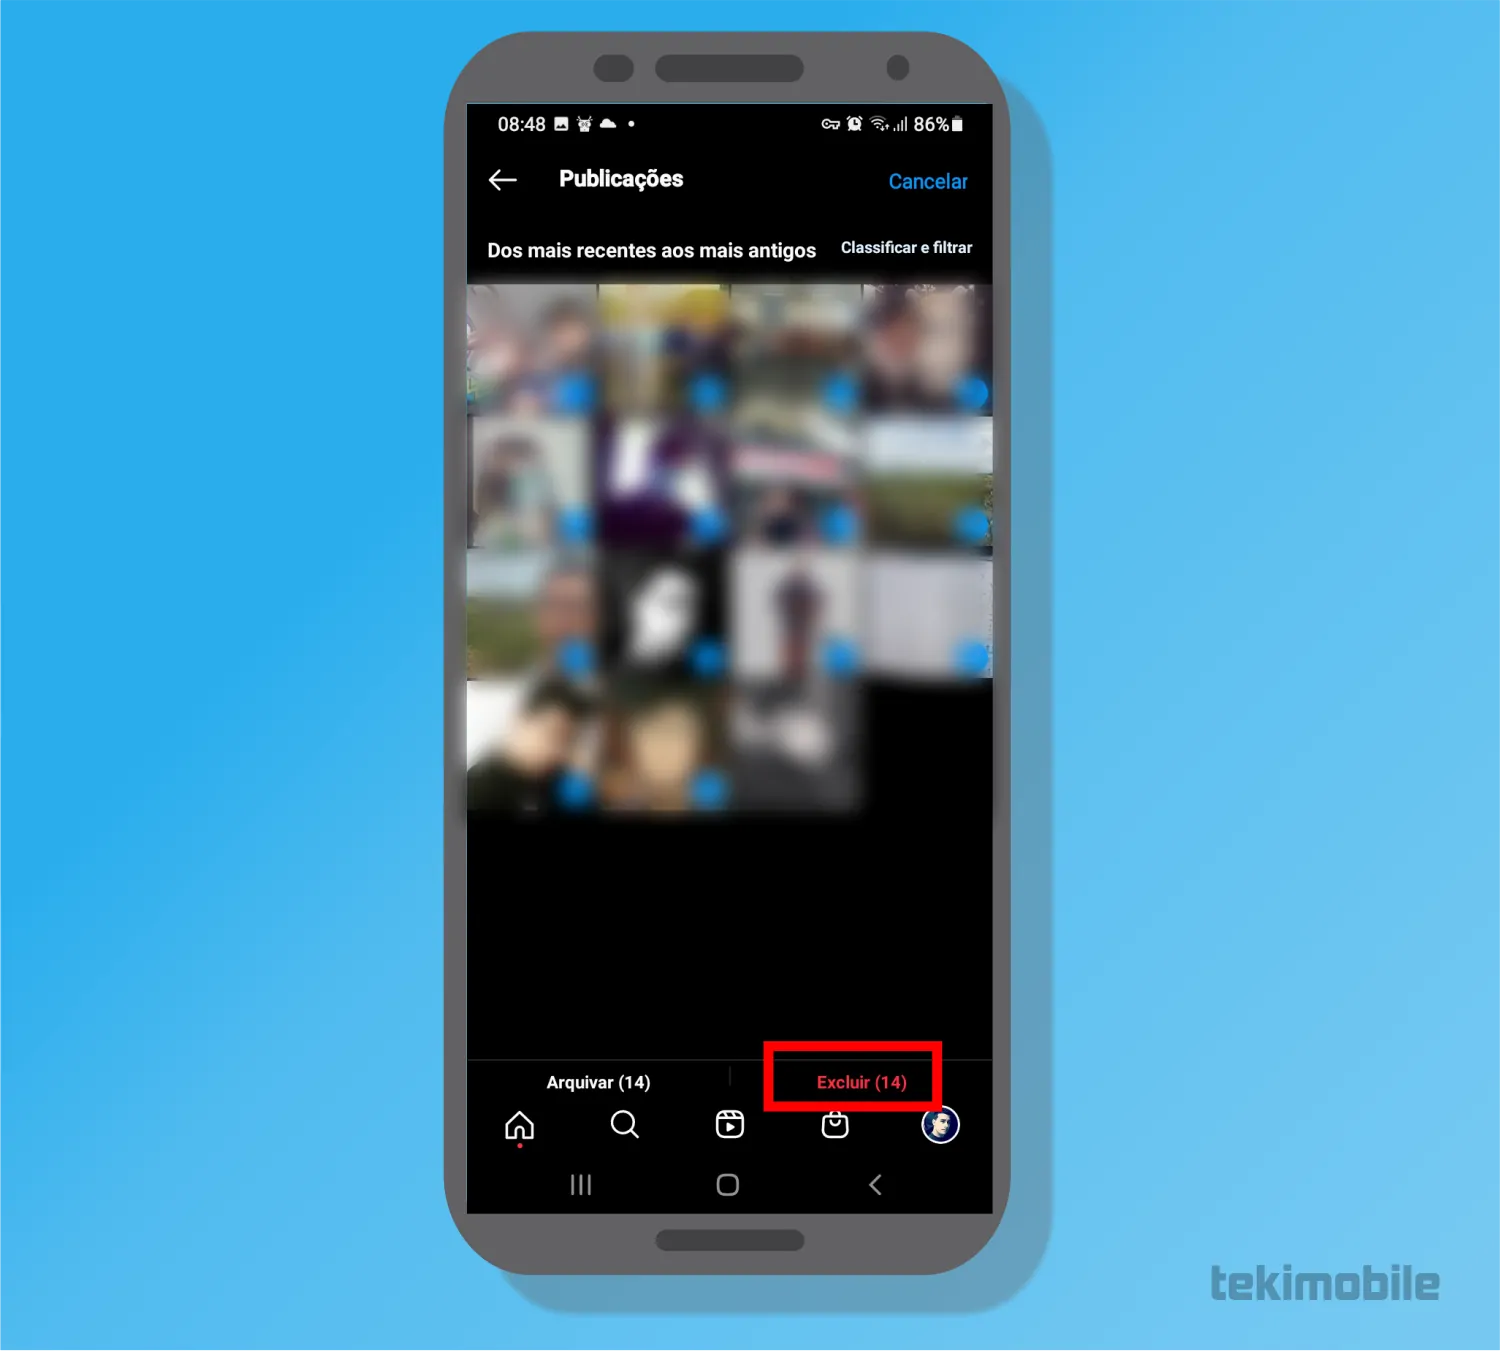 Selecione as fotos e toque sobre a opção Excluir - Como deletar todas fotos do Instagram